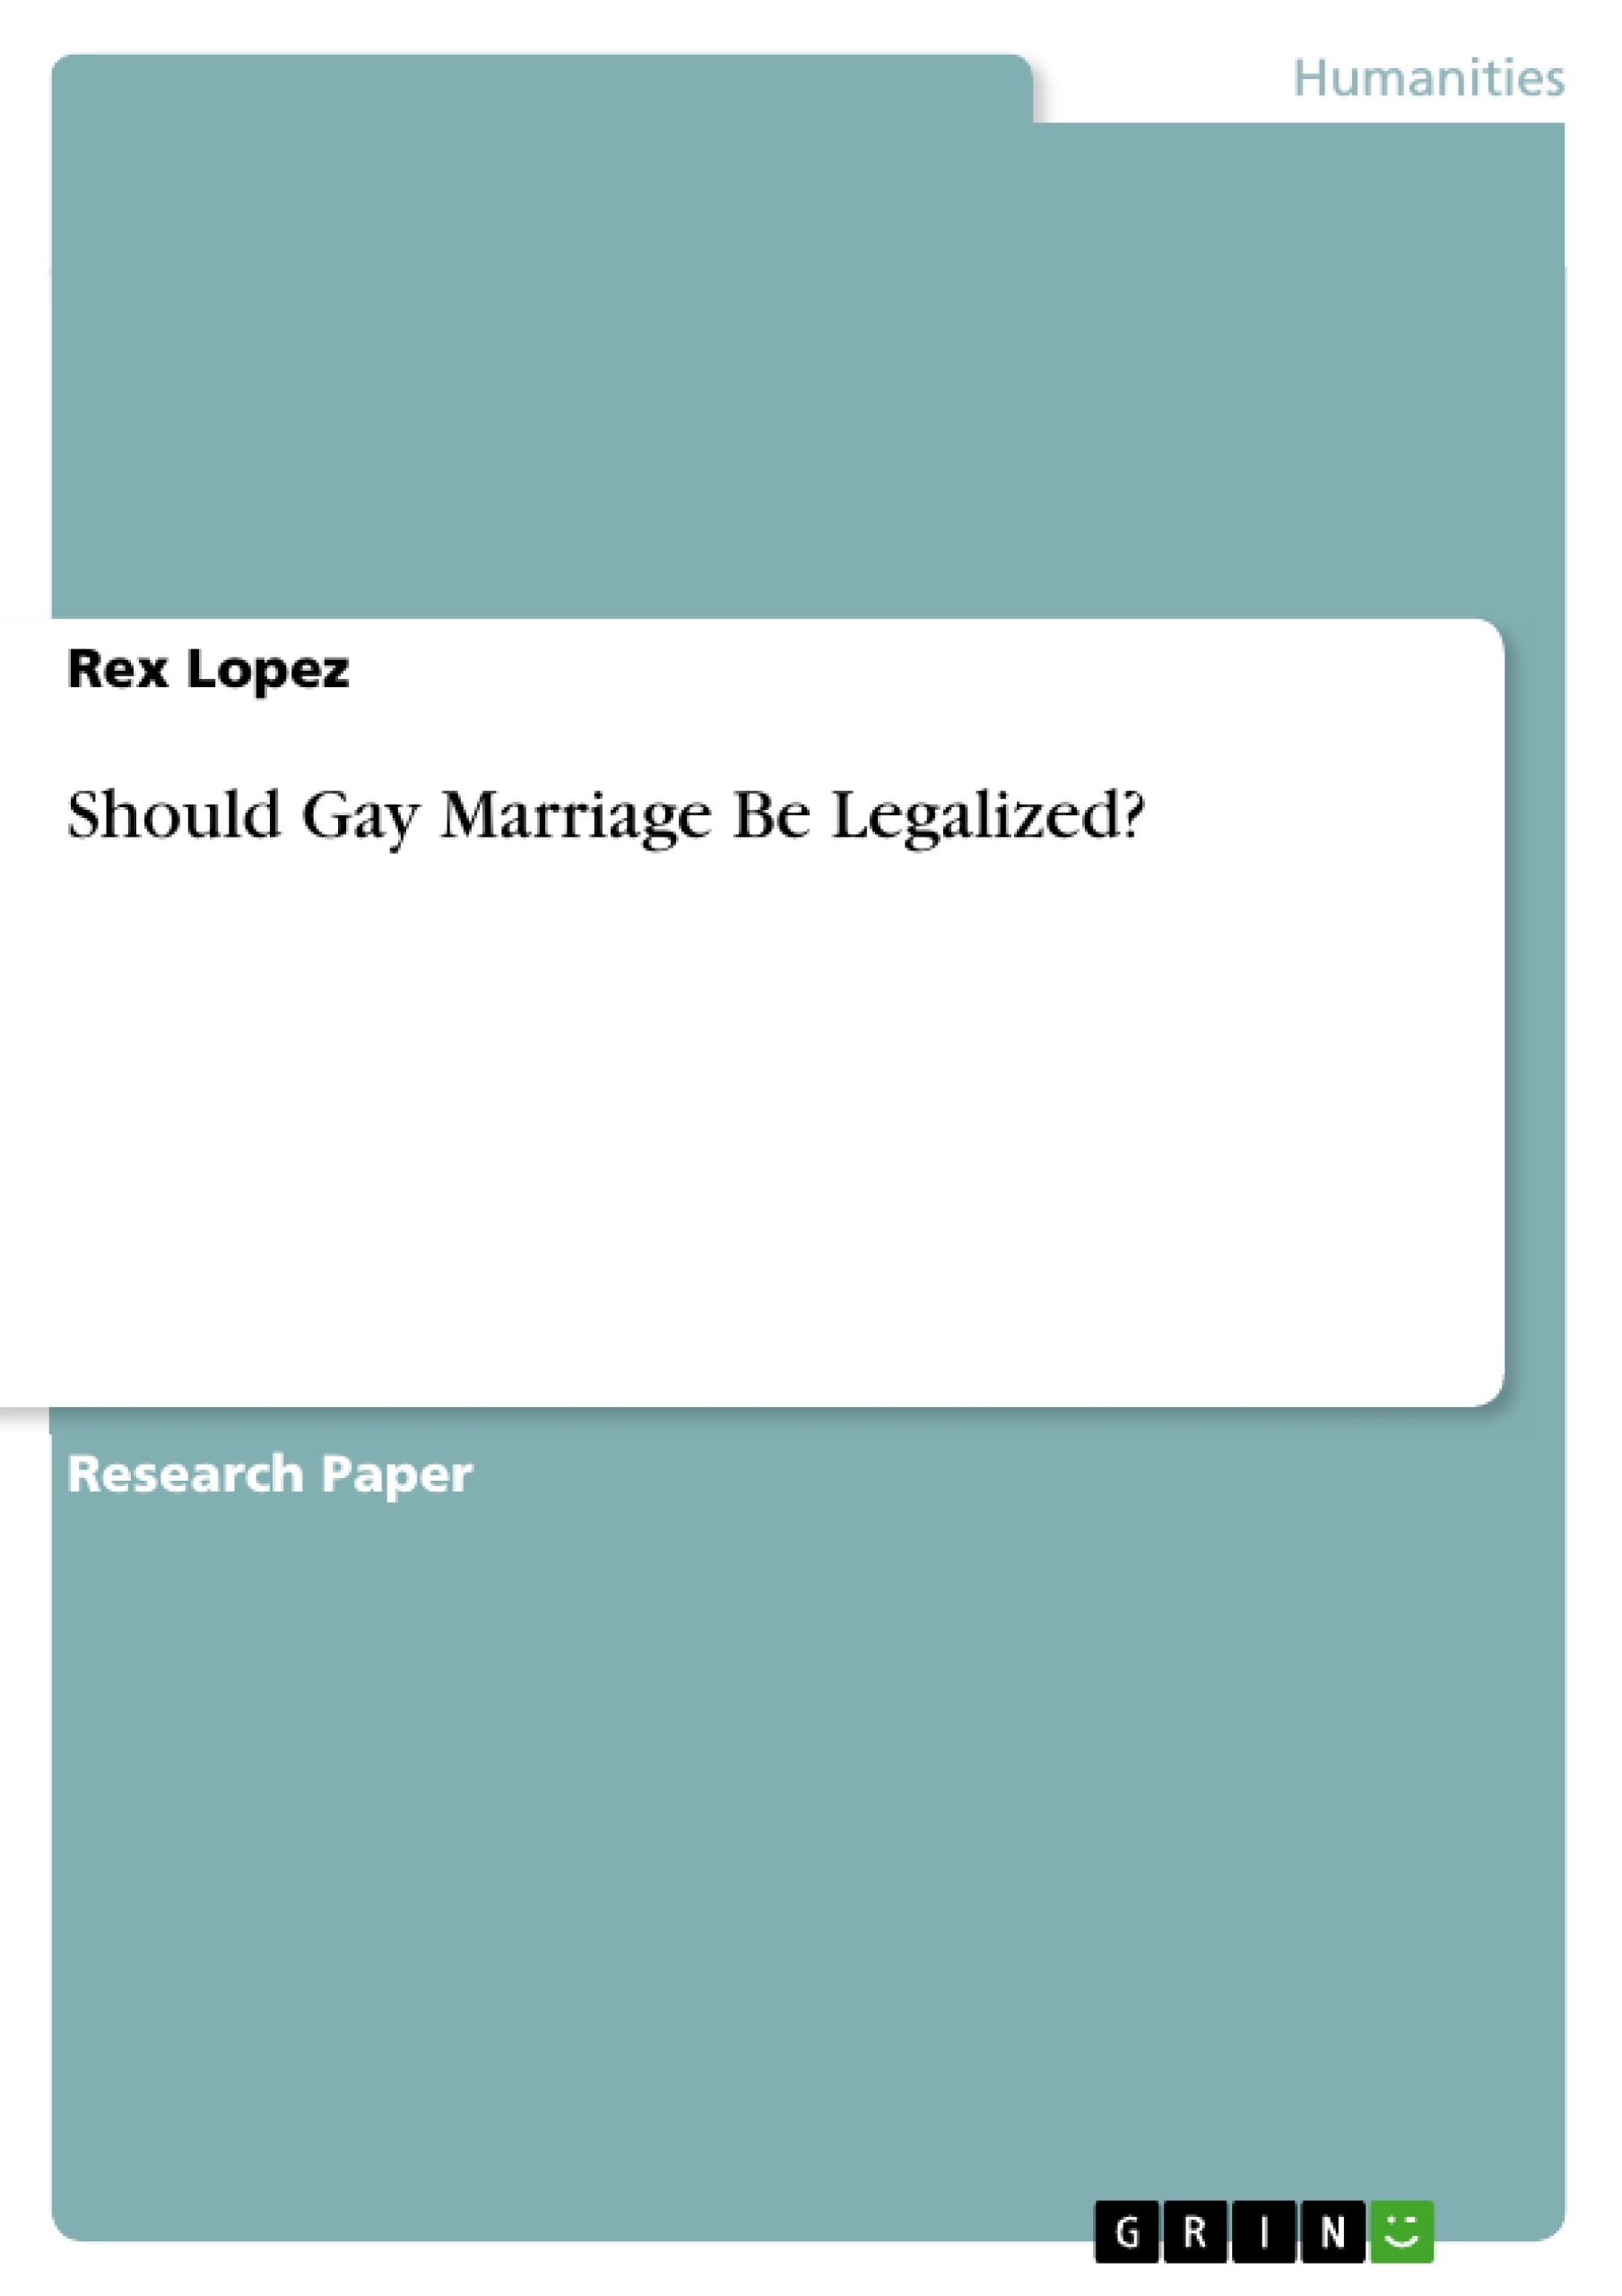 gay marriage debate essay